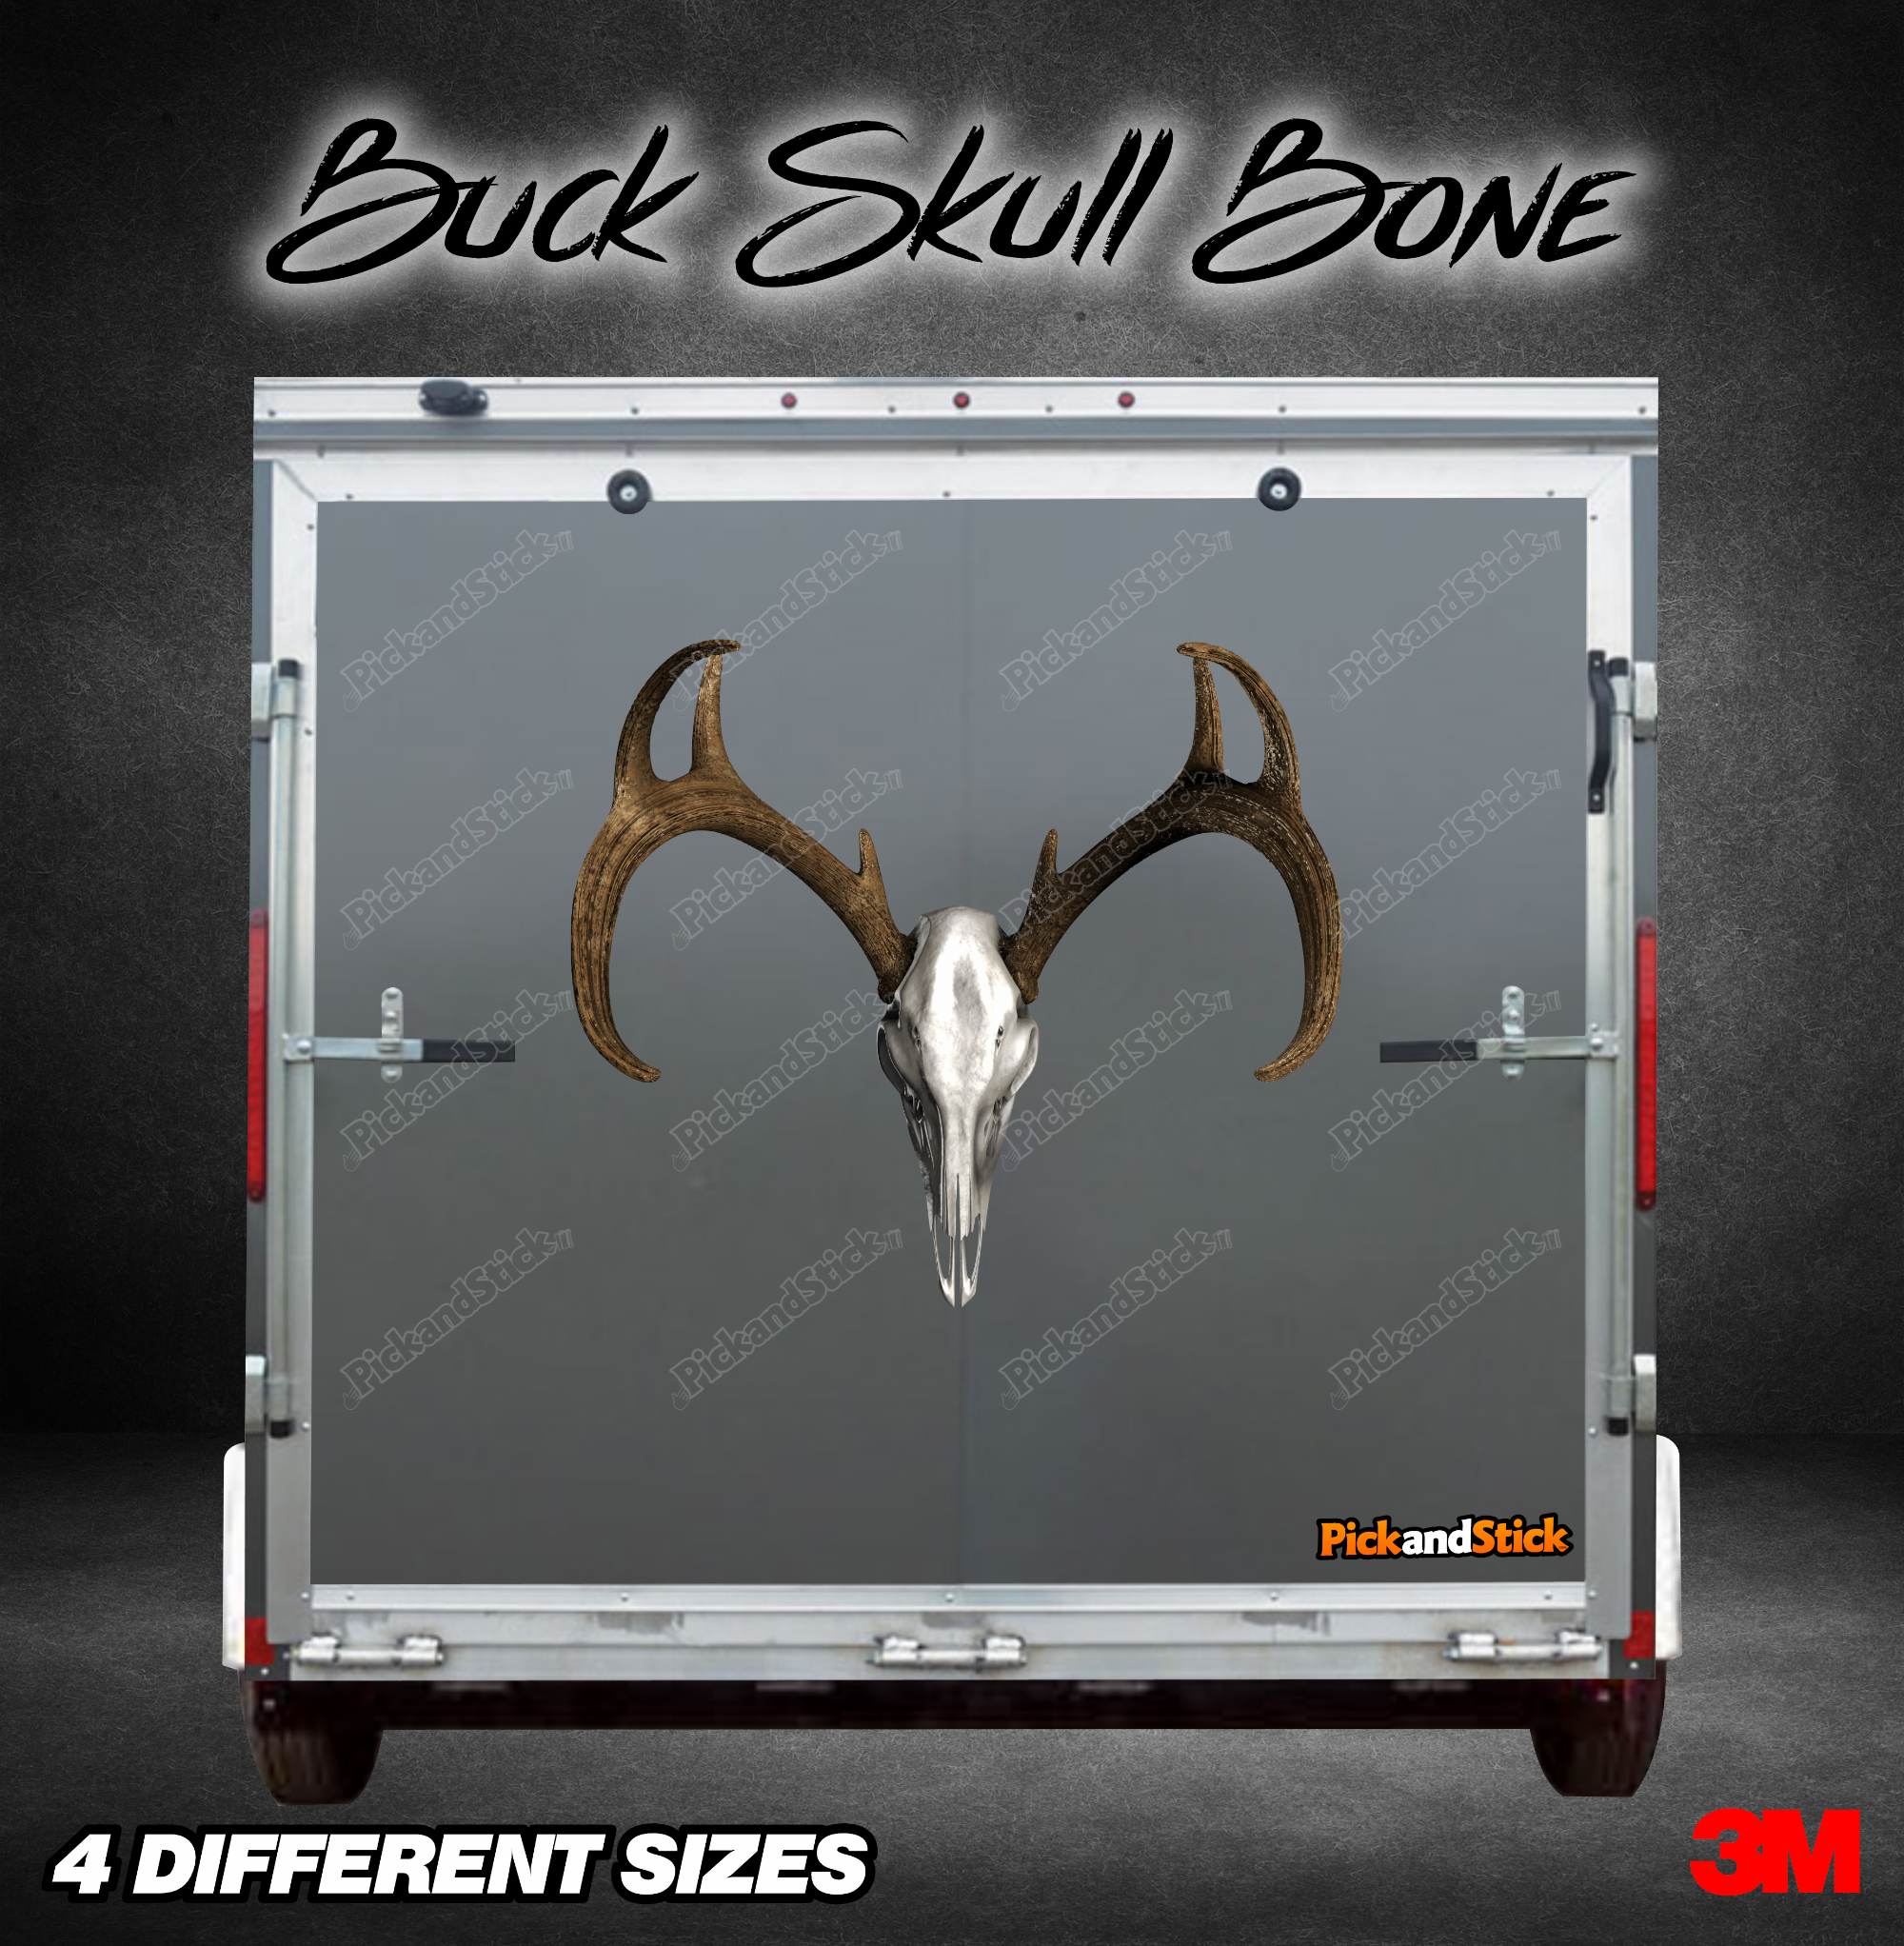 Buck Skull Bone Trailer Graphic - PickandStickcom